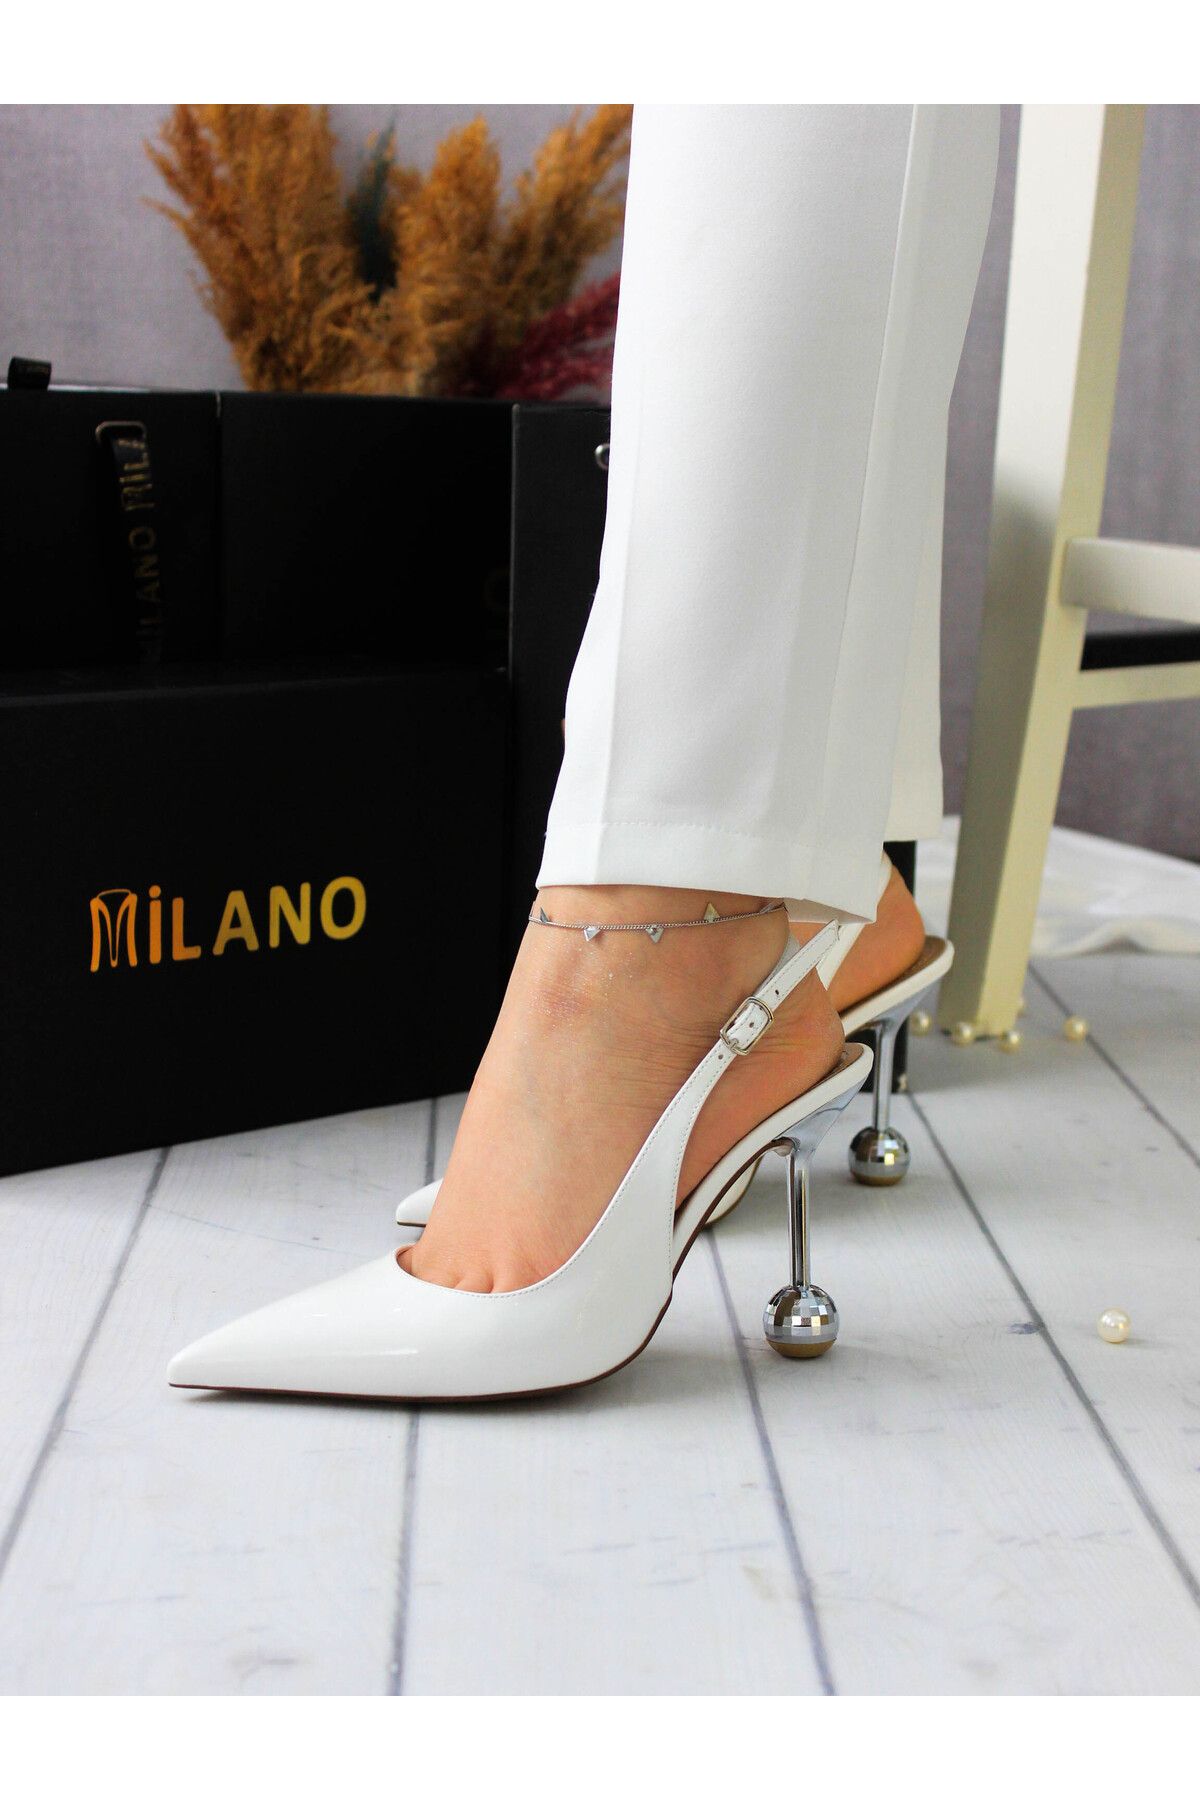 Milan Kadın parlak Şik Topuklu Modern Stiletto